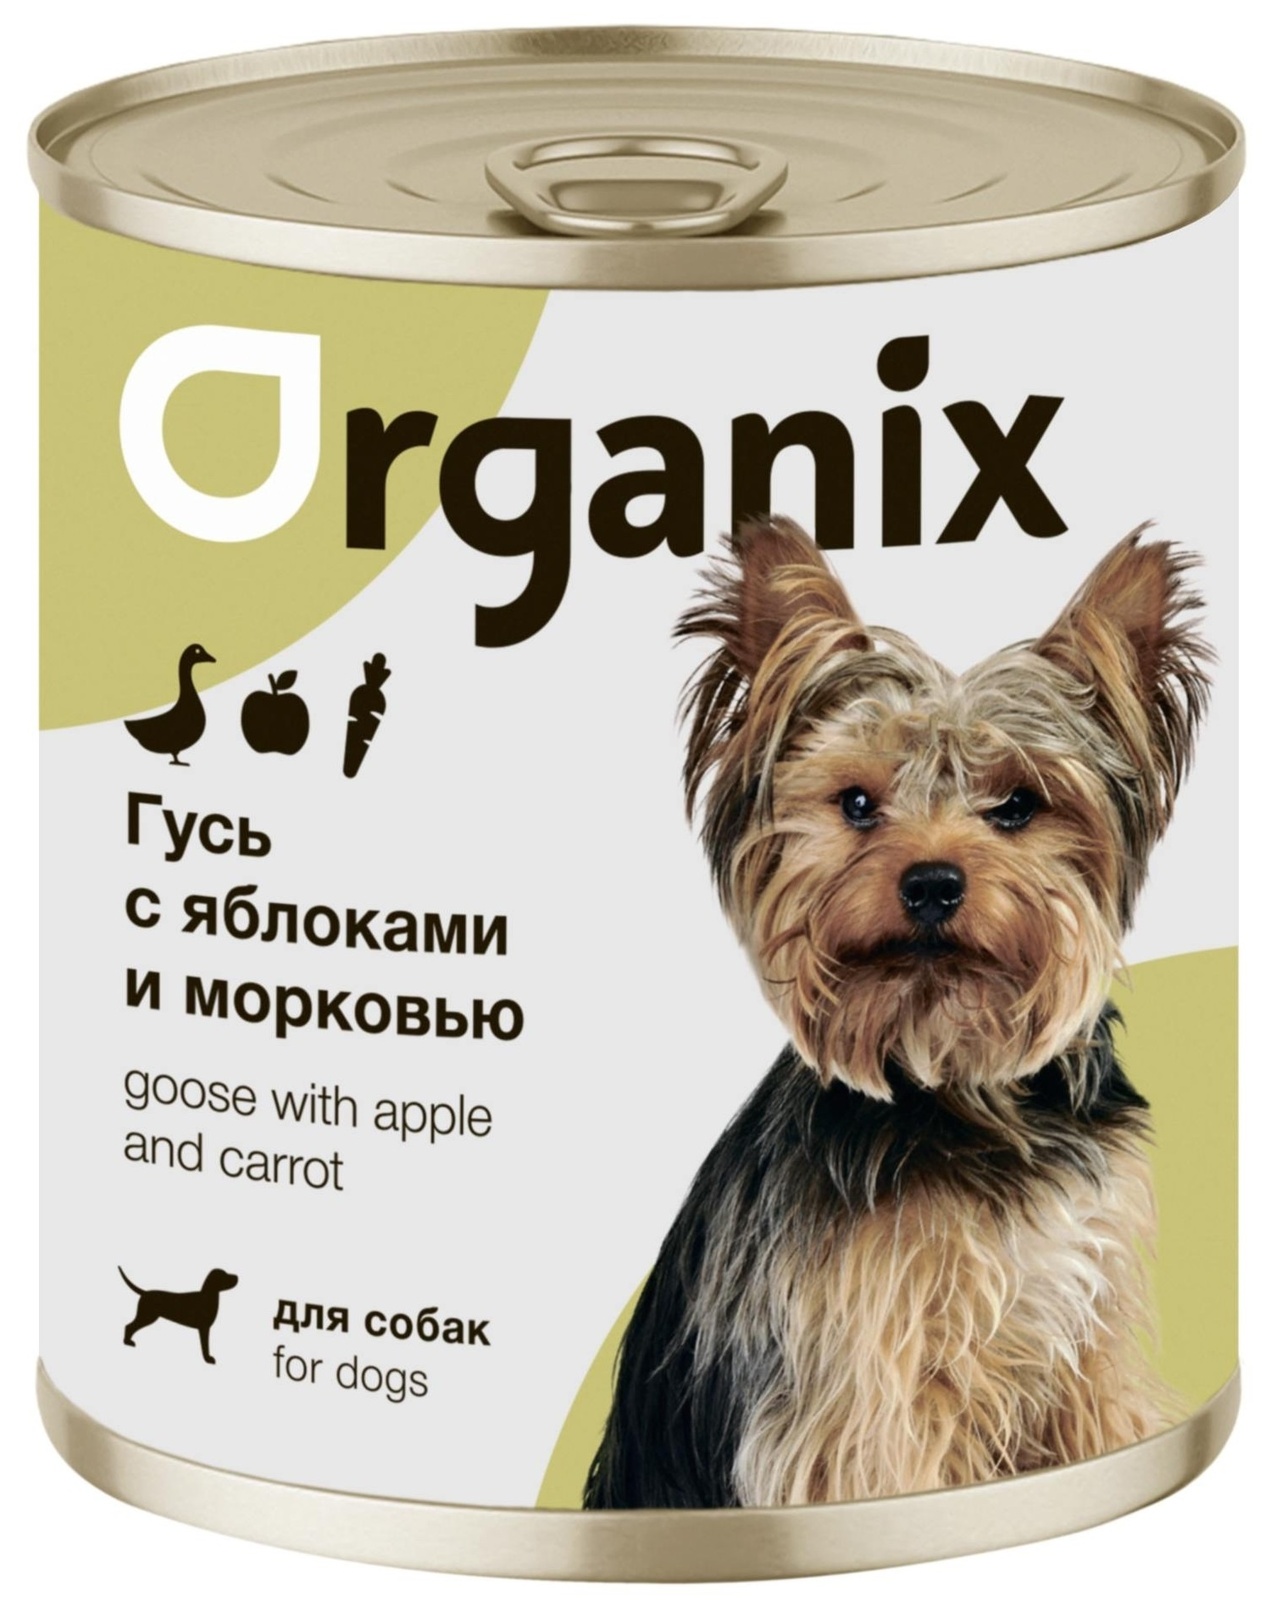 Organix консервы Organix консервы для собак Фрикасе из гуся с яблоками и морковкой (750 г) organix консервы organix консервы для собак кролик с зеленым горошком 750 г